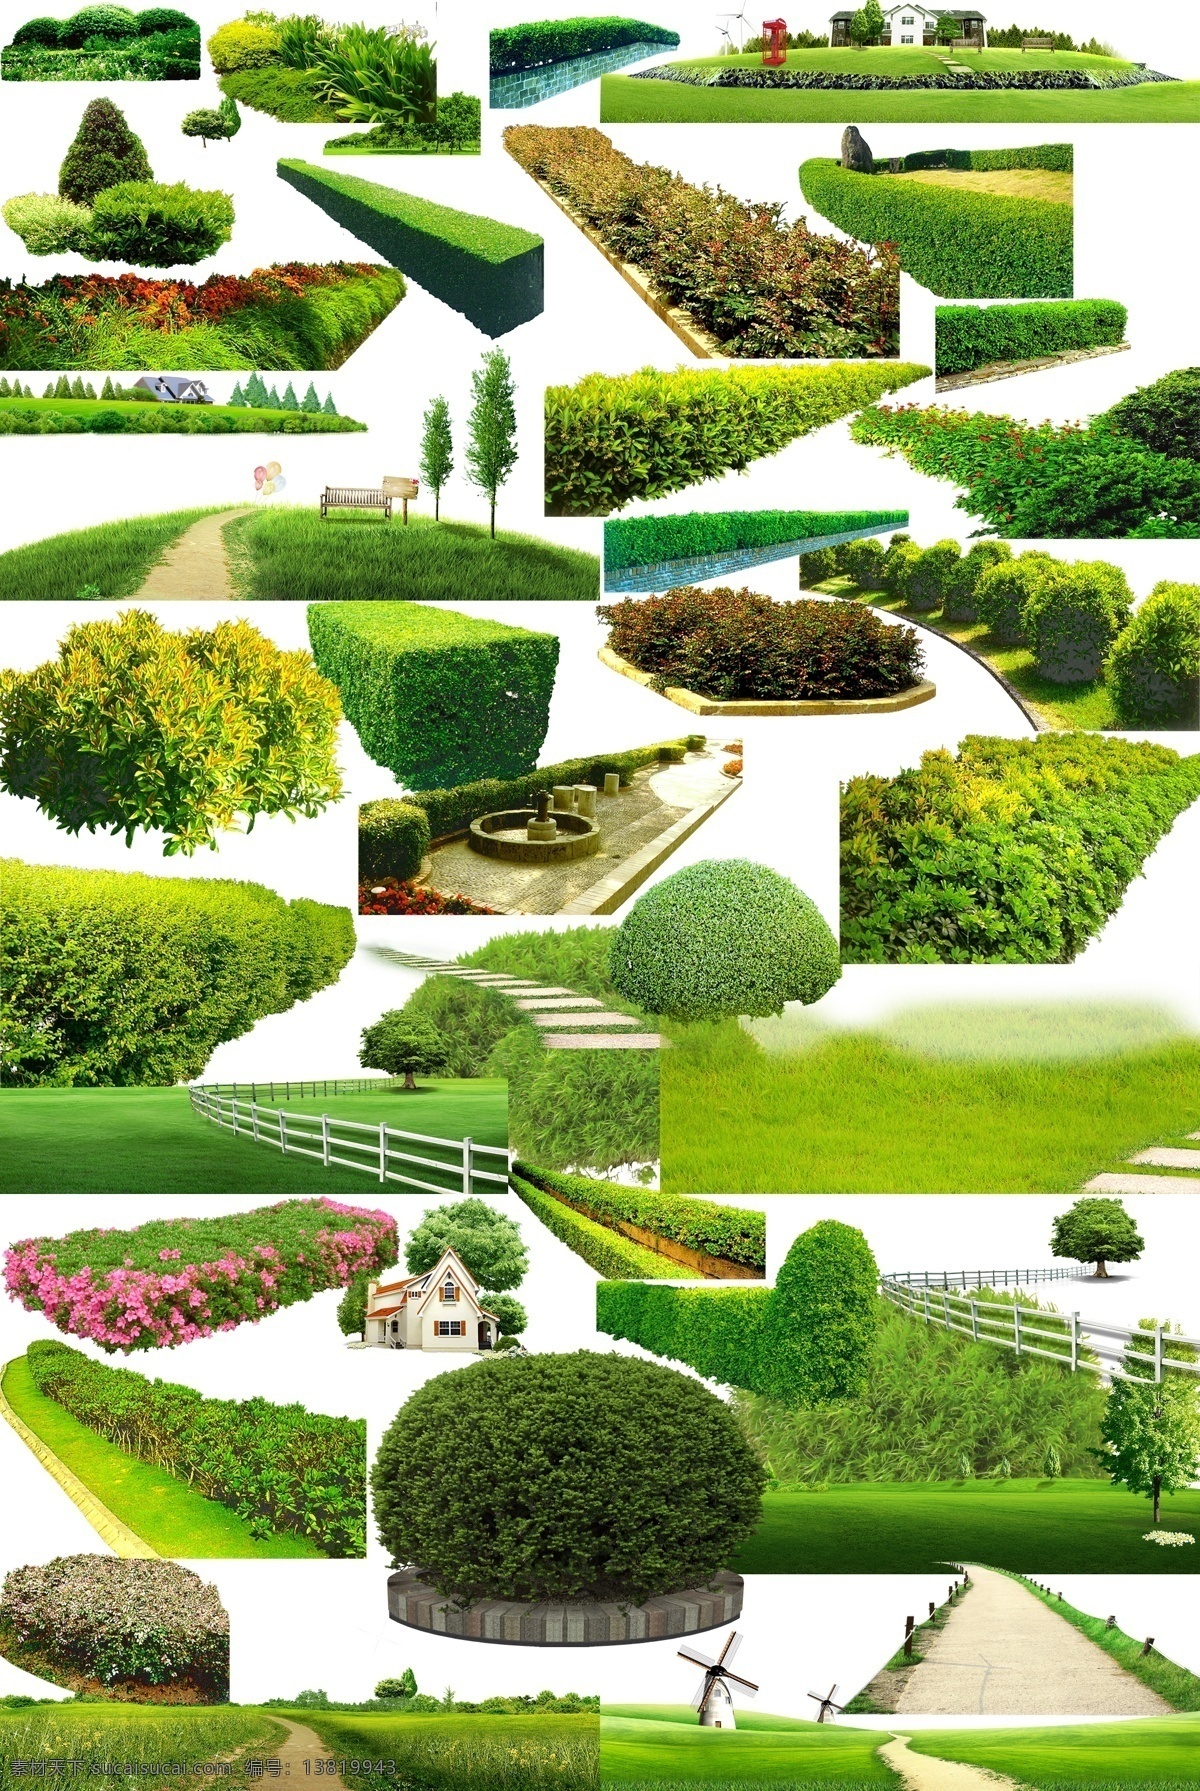 园林 集合 园林素材 png集合 园艺 花圃 条形花圃 草坪 绿色 室外 小路 栏杆 围栏 白色